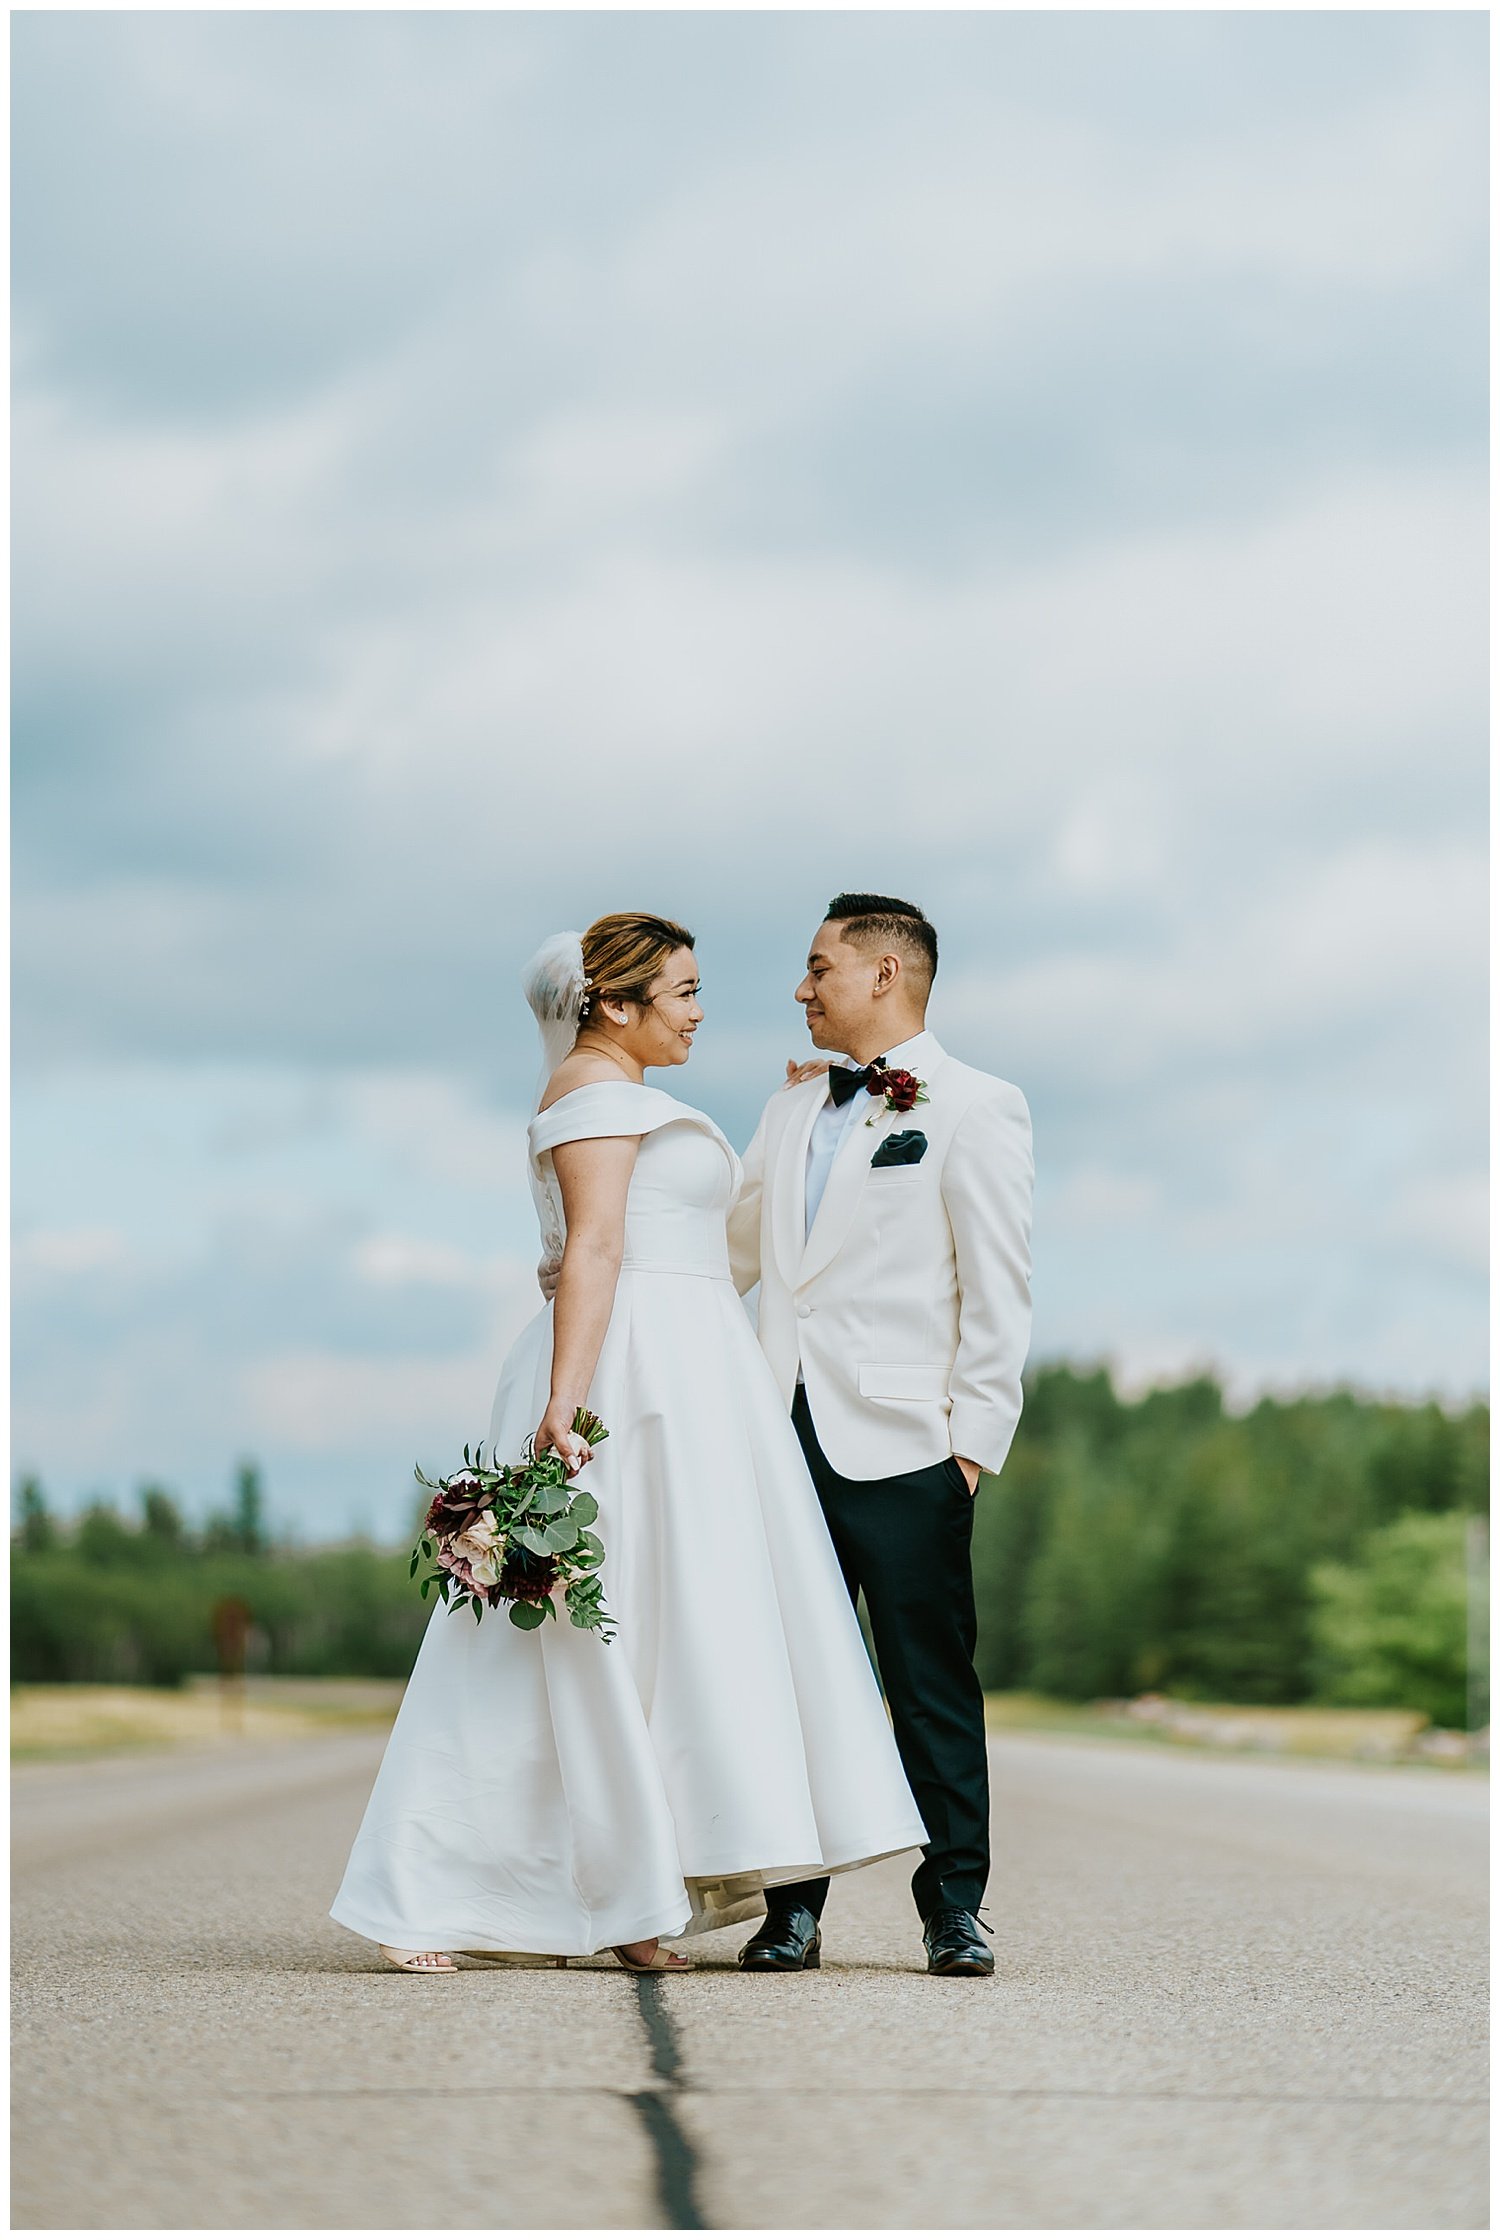 Shania & Paolo’s Beautiful Backyard Wedding Winnipeg Manitoba 51.jpg